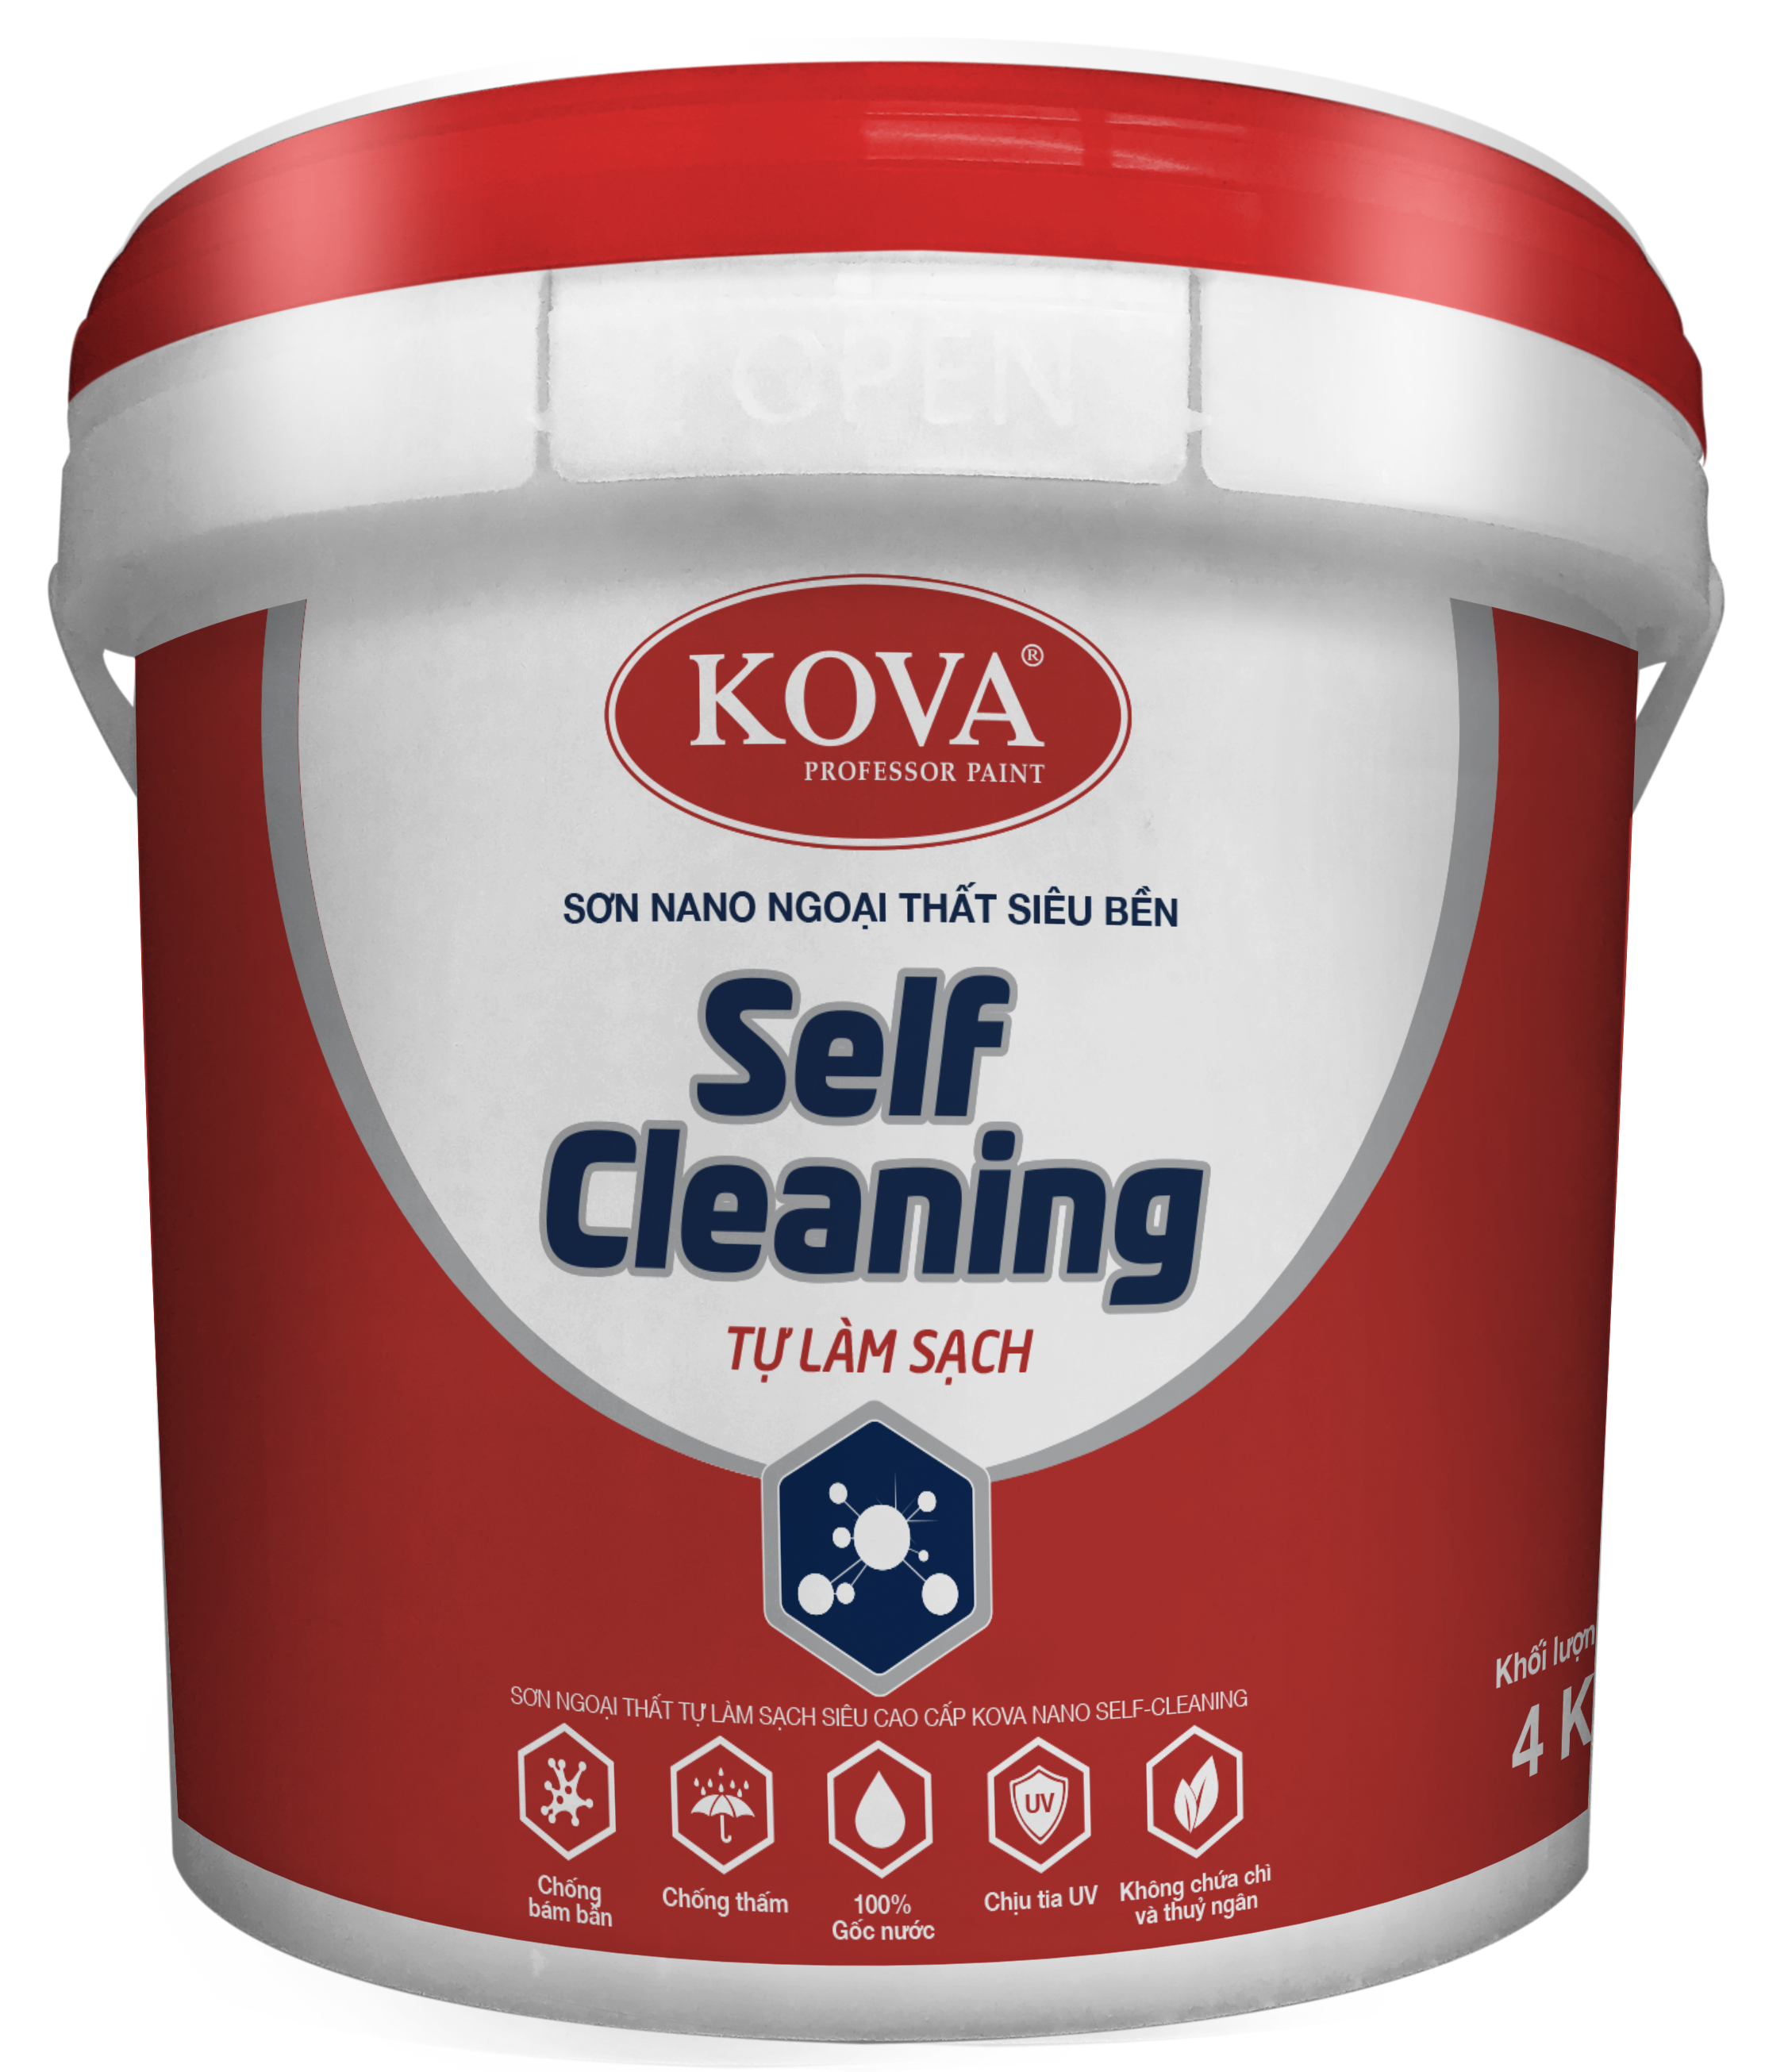 Tập đoàn Sơn KOVA: nước sơn
Tập đoàn Sơn KOVA là một trong những thương hiệu hàng đầu trong ngành sản xuất sơn. Với hơn 50 năm kinh nghiệm, Sơn KOVA cam kết mang đến cho khách hàng những sản phẩm sơn với chất lượng và giá cả vô cùng hấp dẫn.